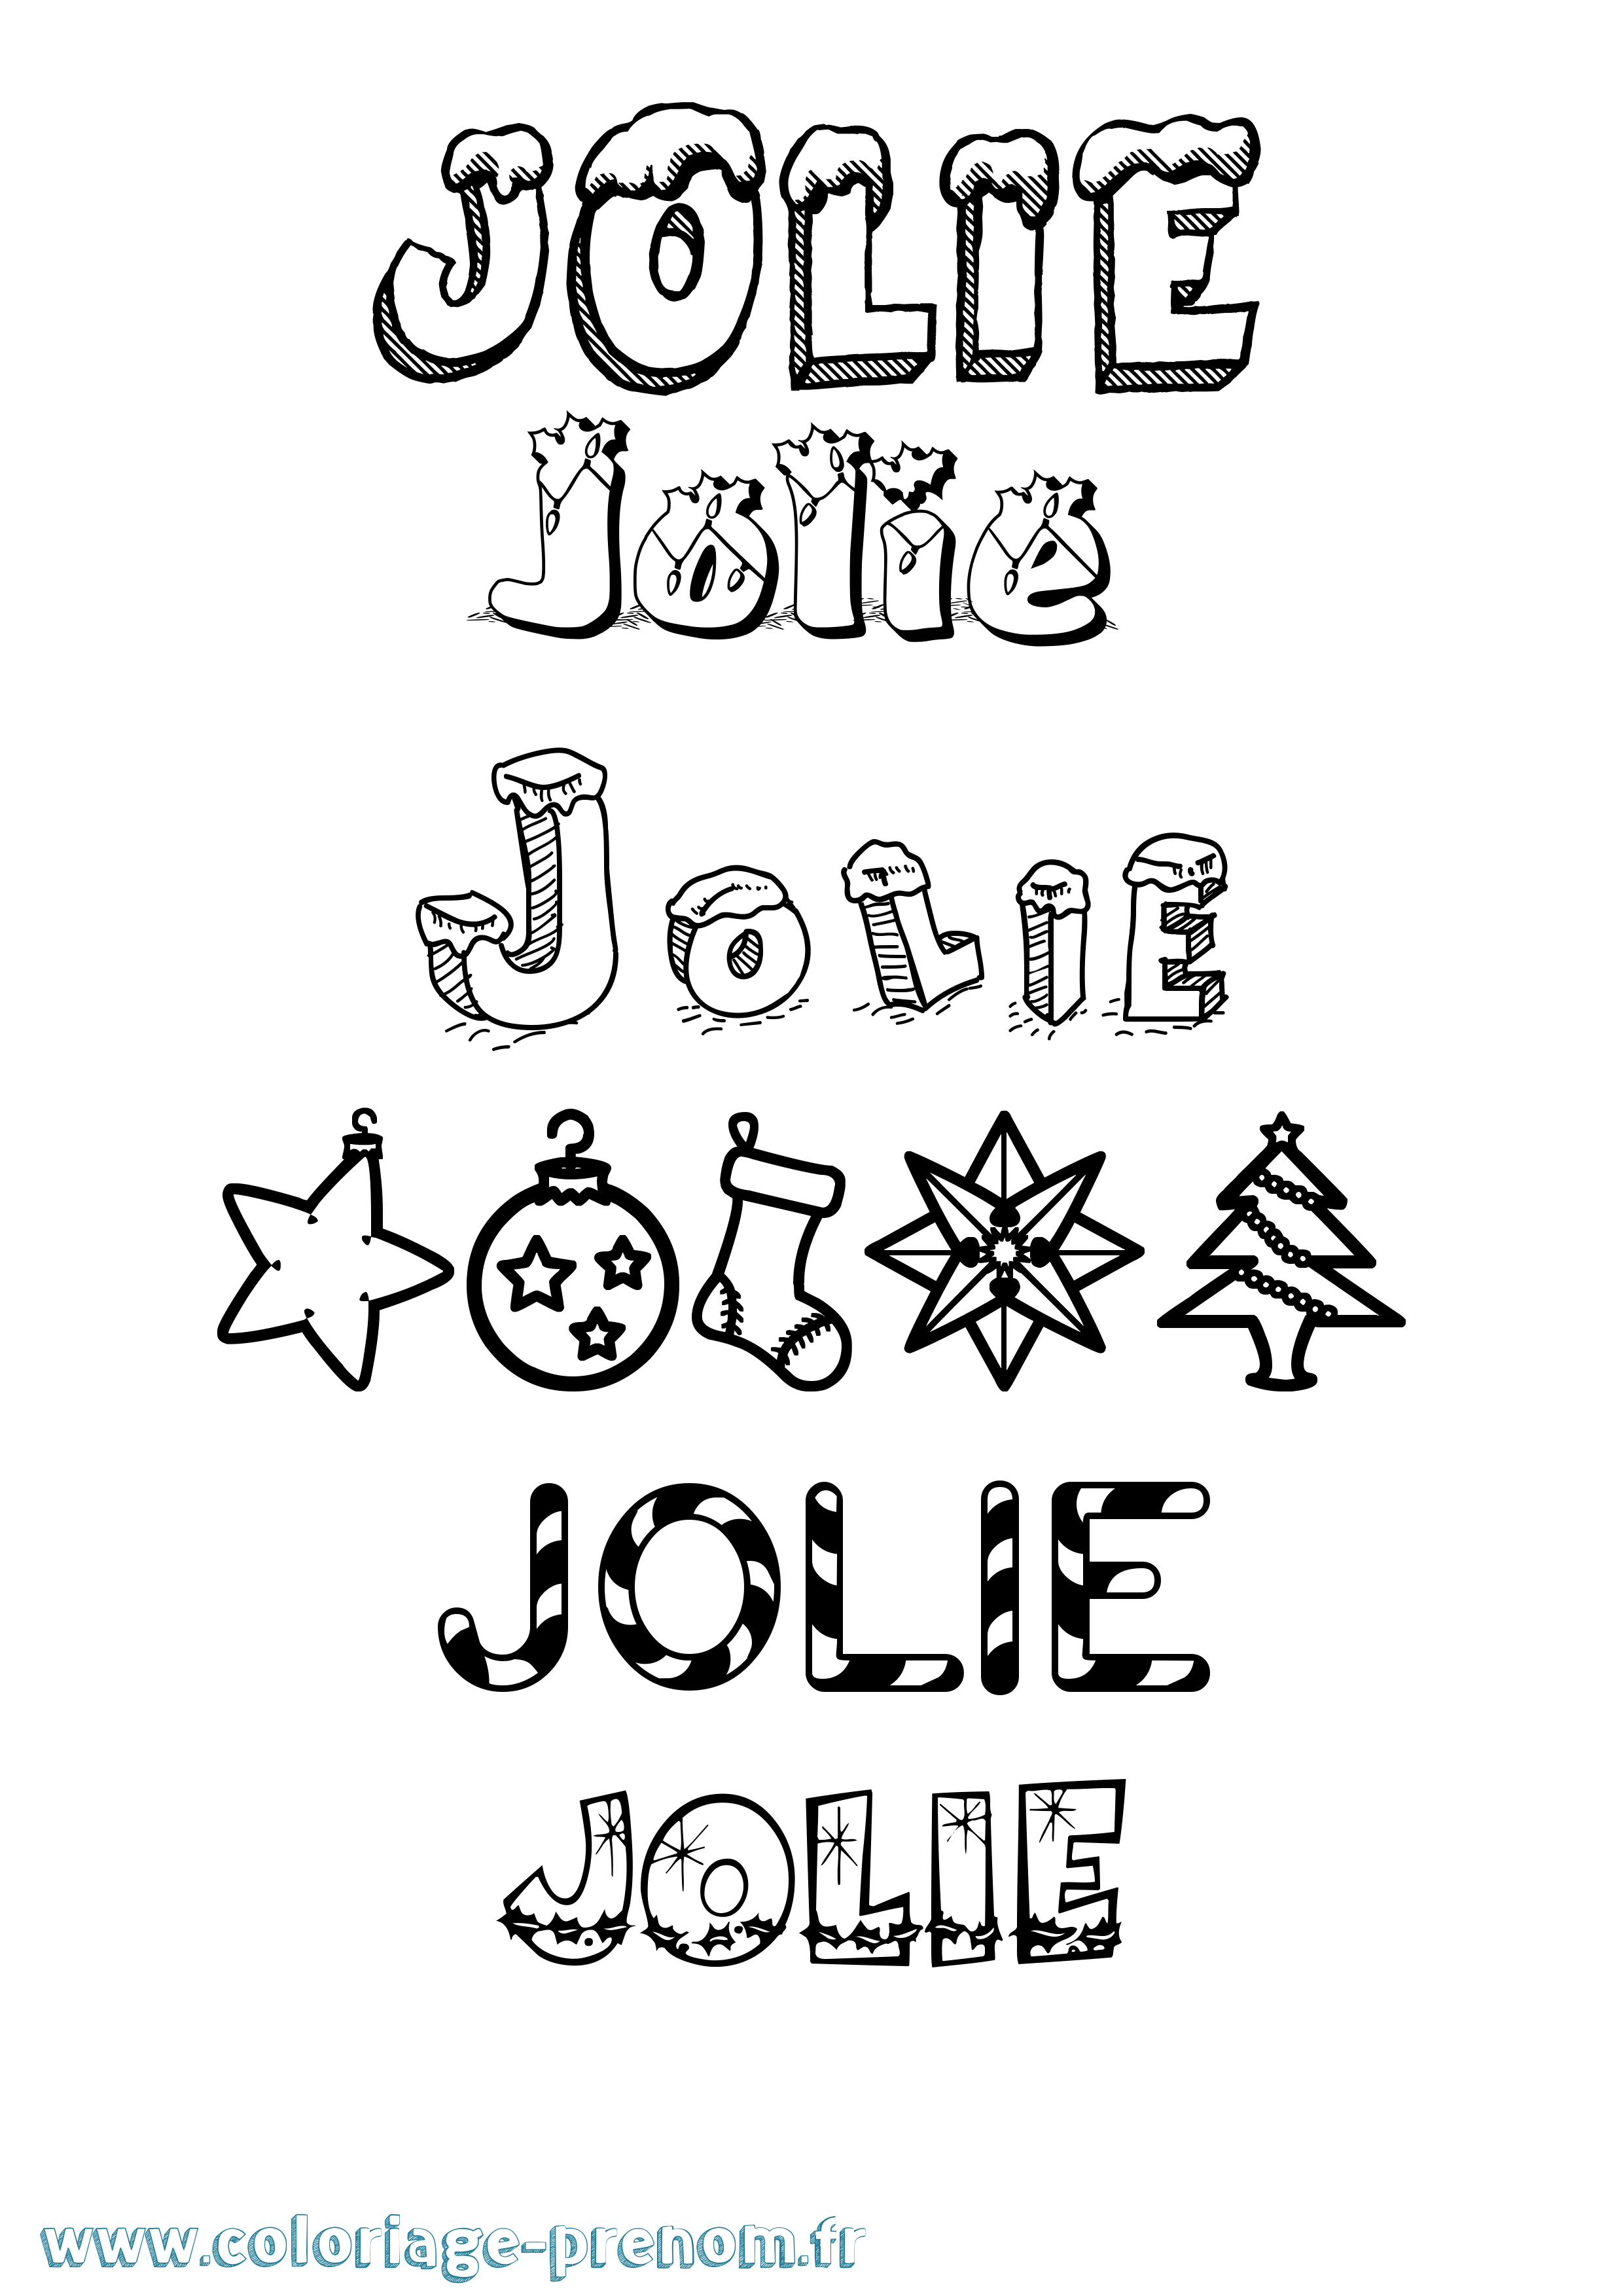 Coloriage prénom Jolie